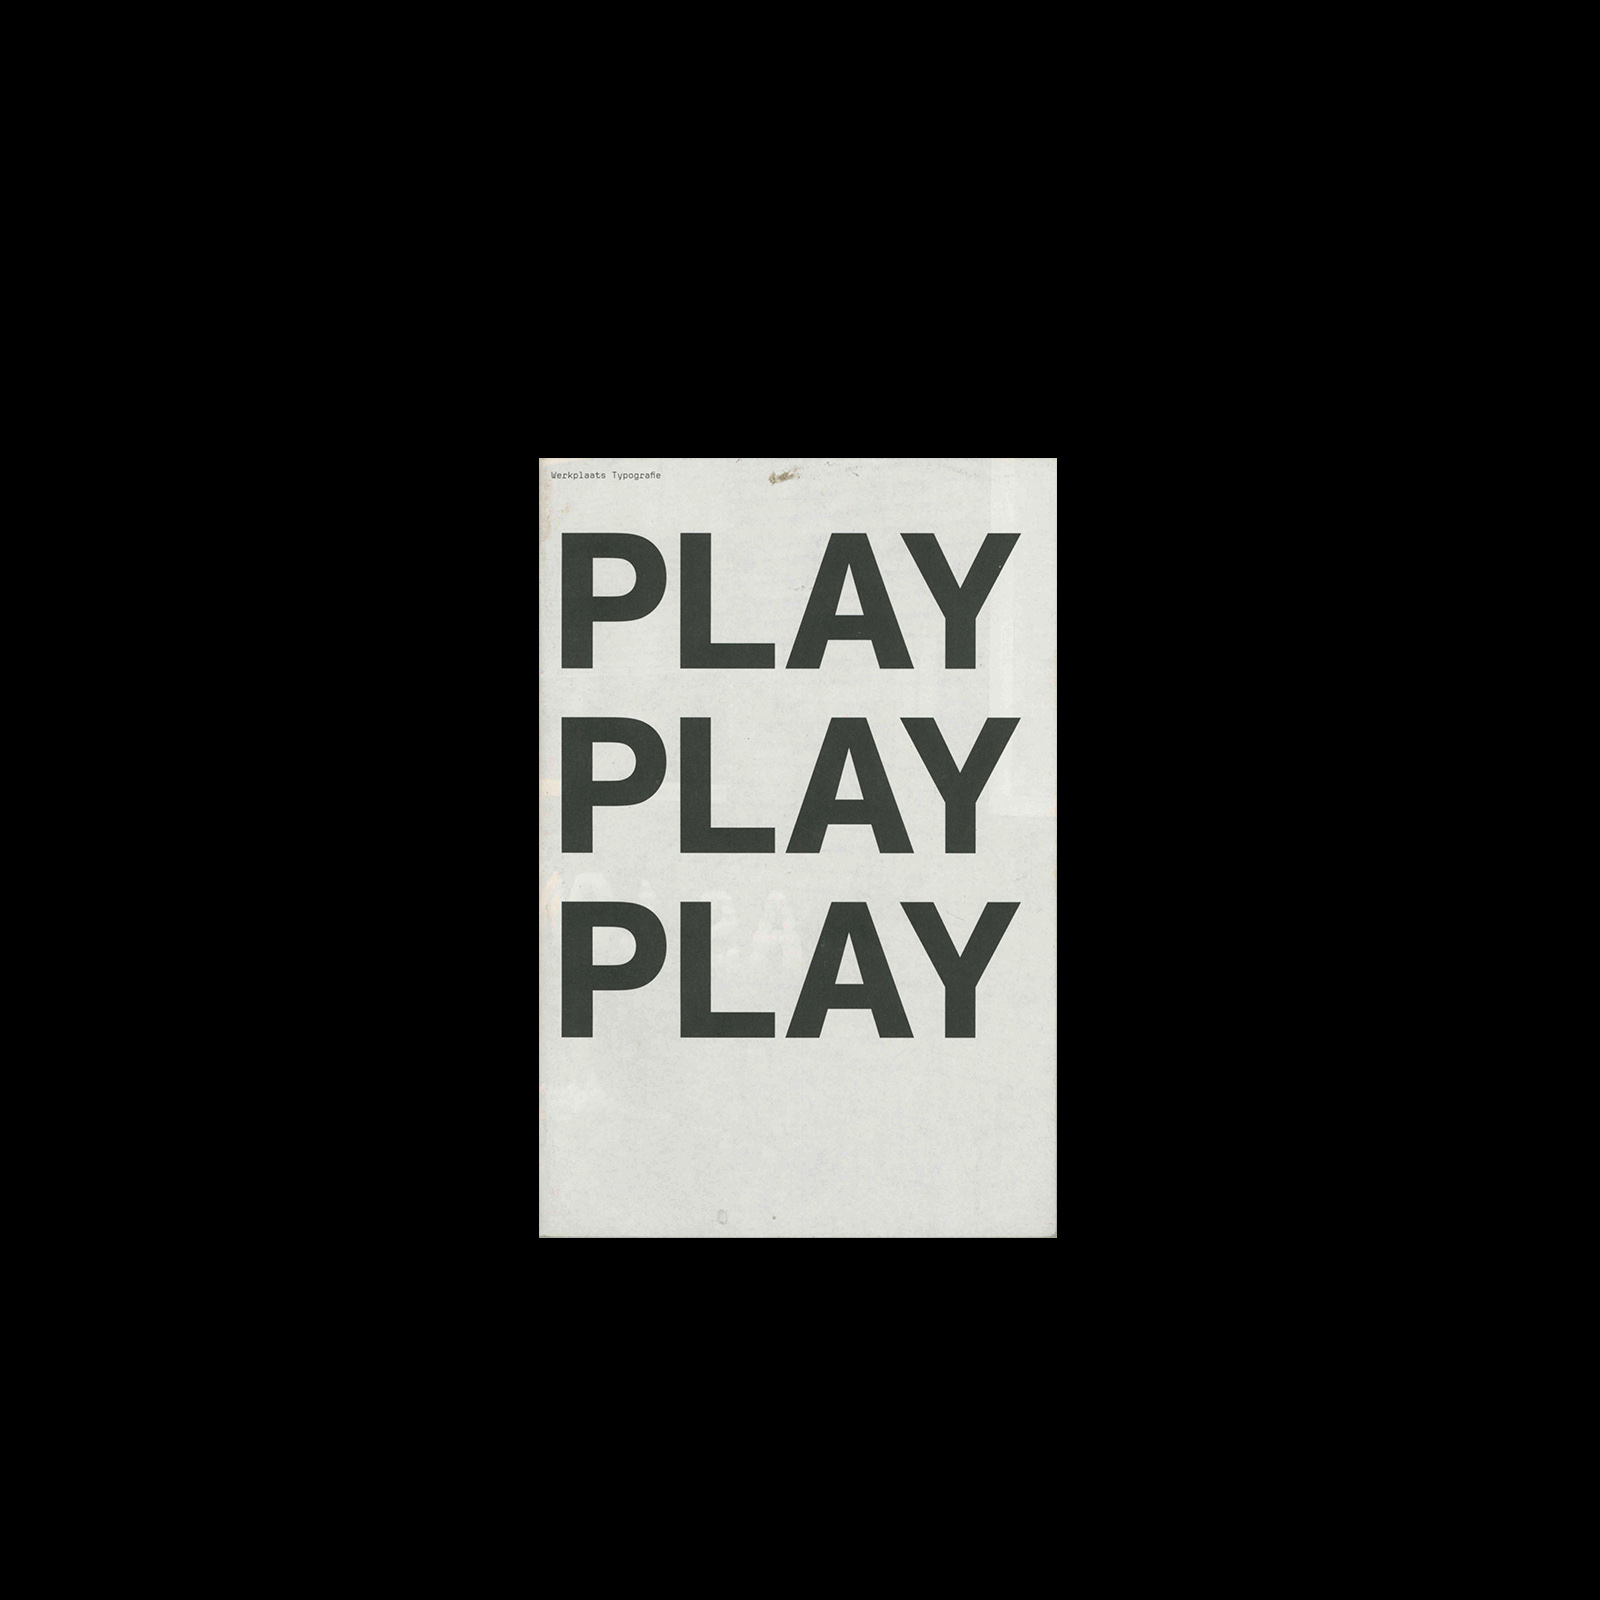 Play Play Play, Werkplaats Typografie, 2006